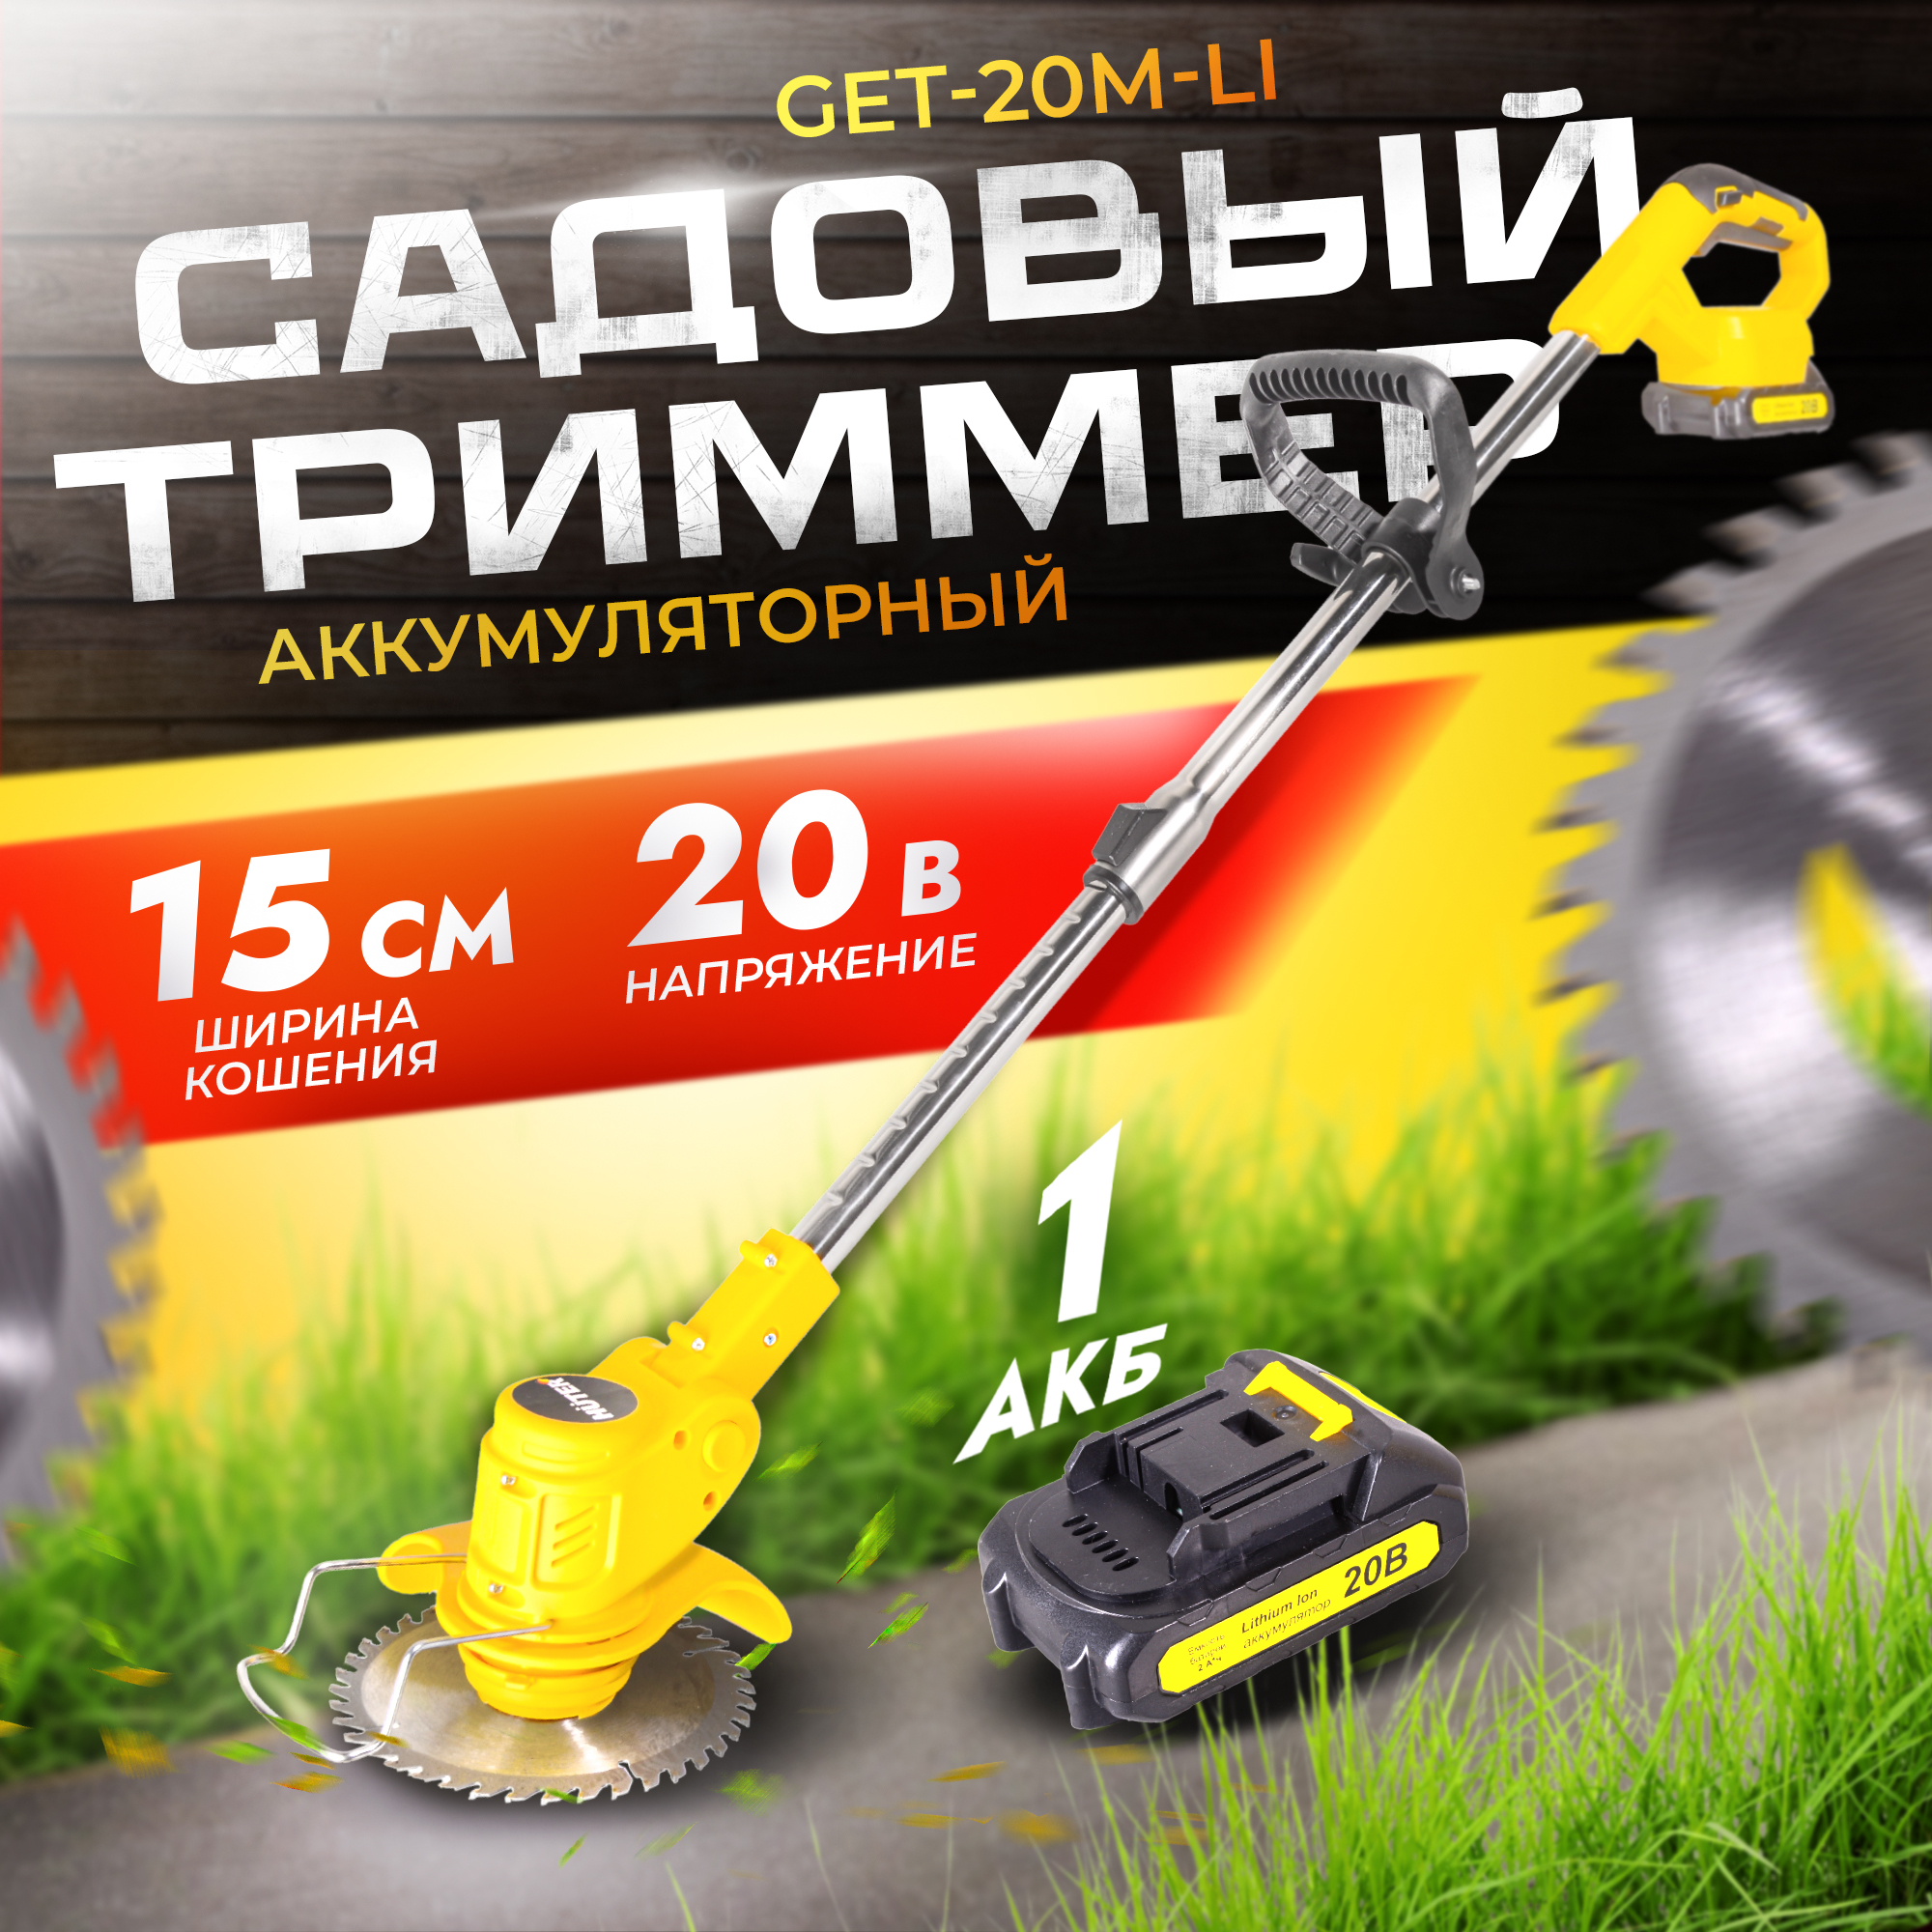 Аккумуляторный садовый триммер Huter GET-20M-Li 70/1/66 - купить в Москве, цены на Мегамаркет | 600018427926